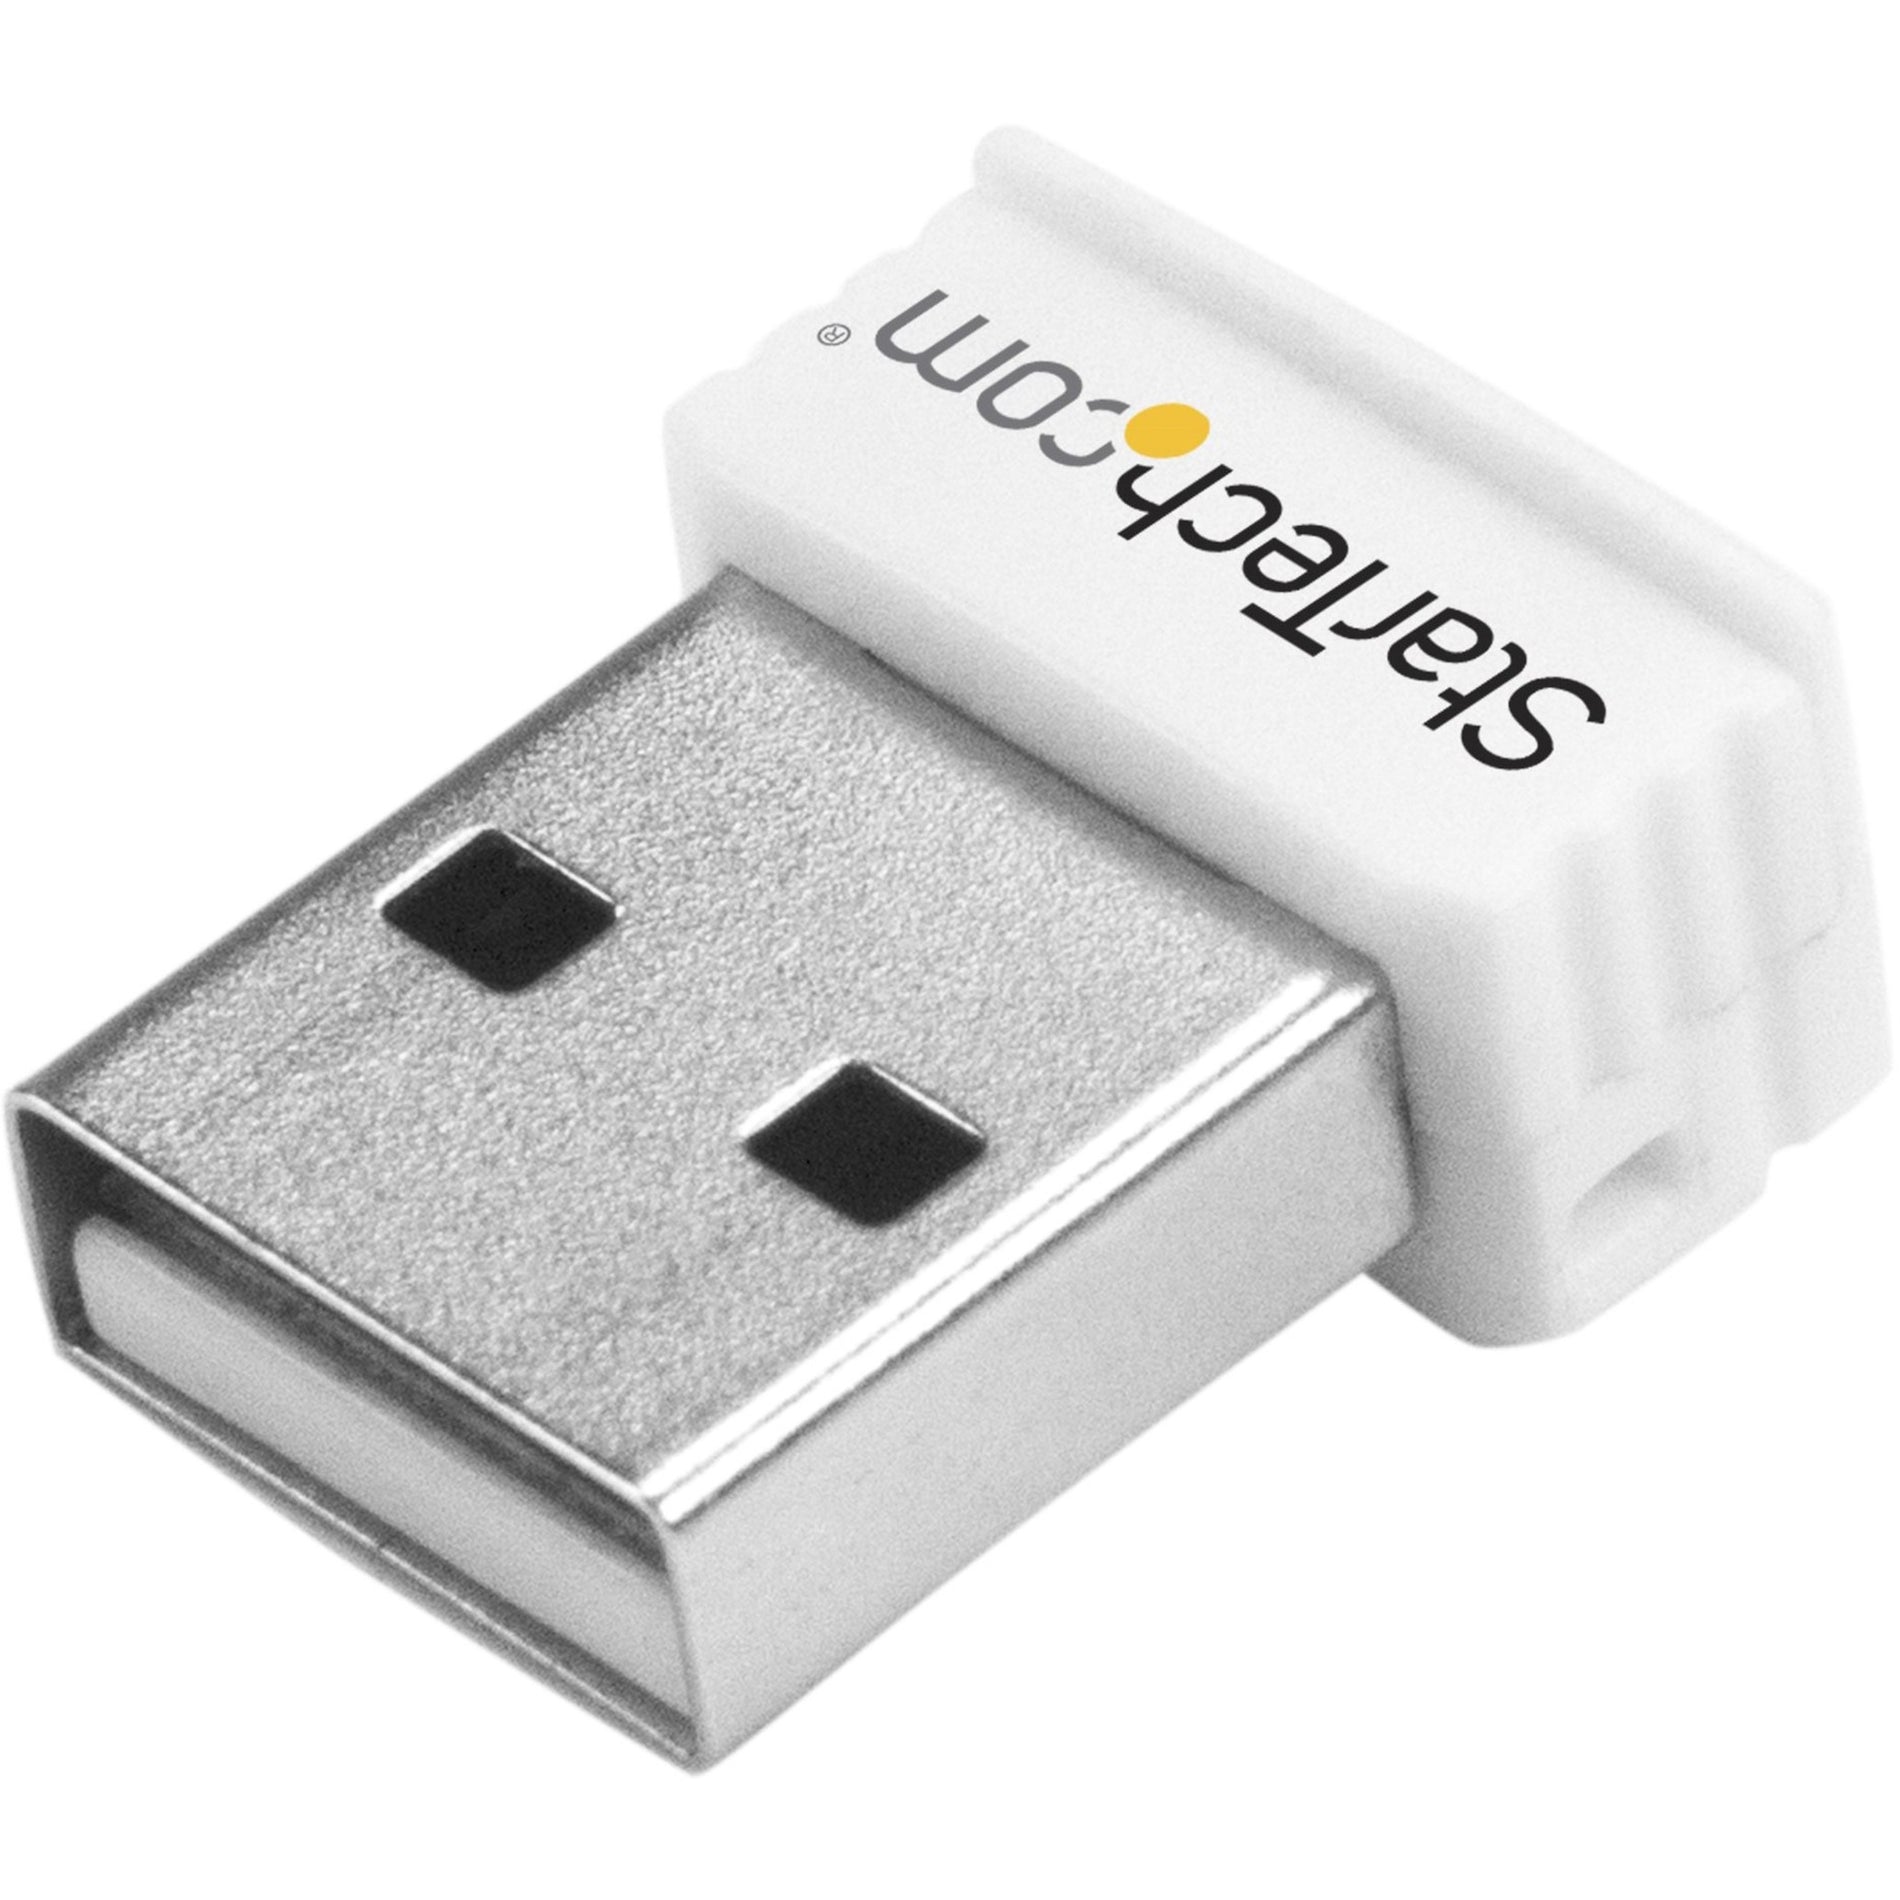 StarTech.com USB150WN1X1W USB Wireless Adapter, 150Mbps Mini WiFi Adapter - White